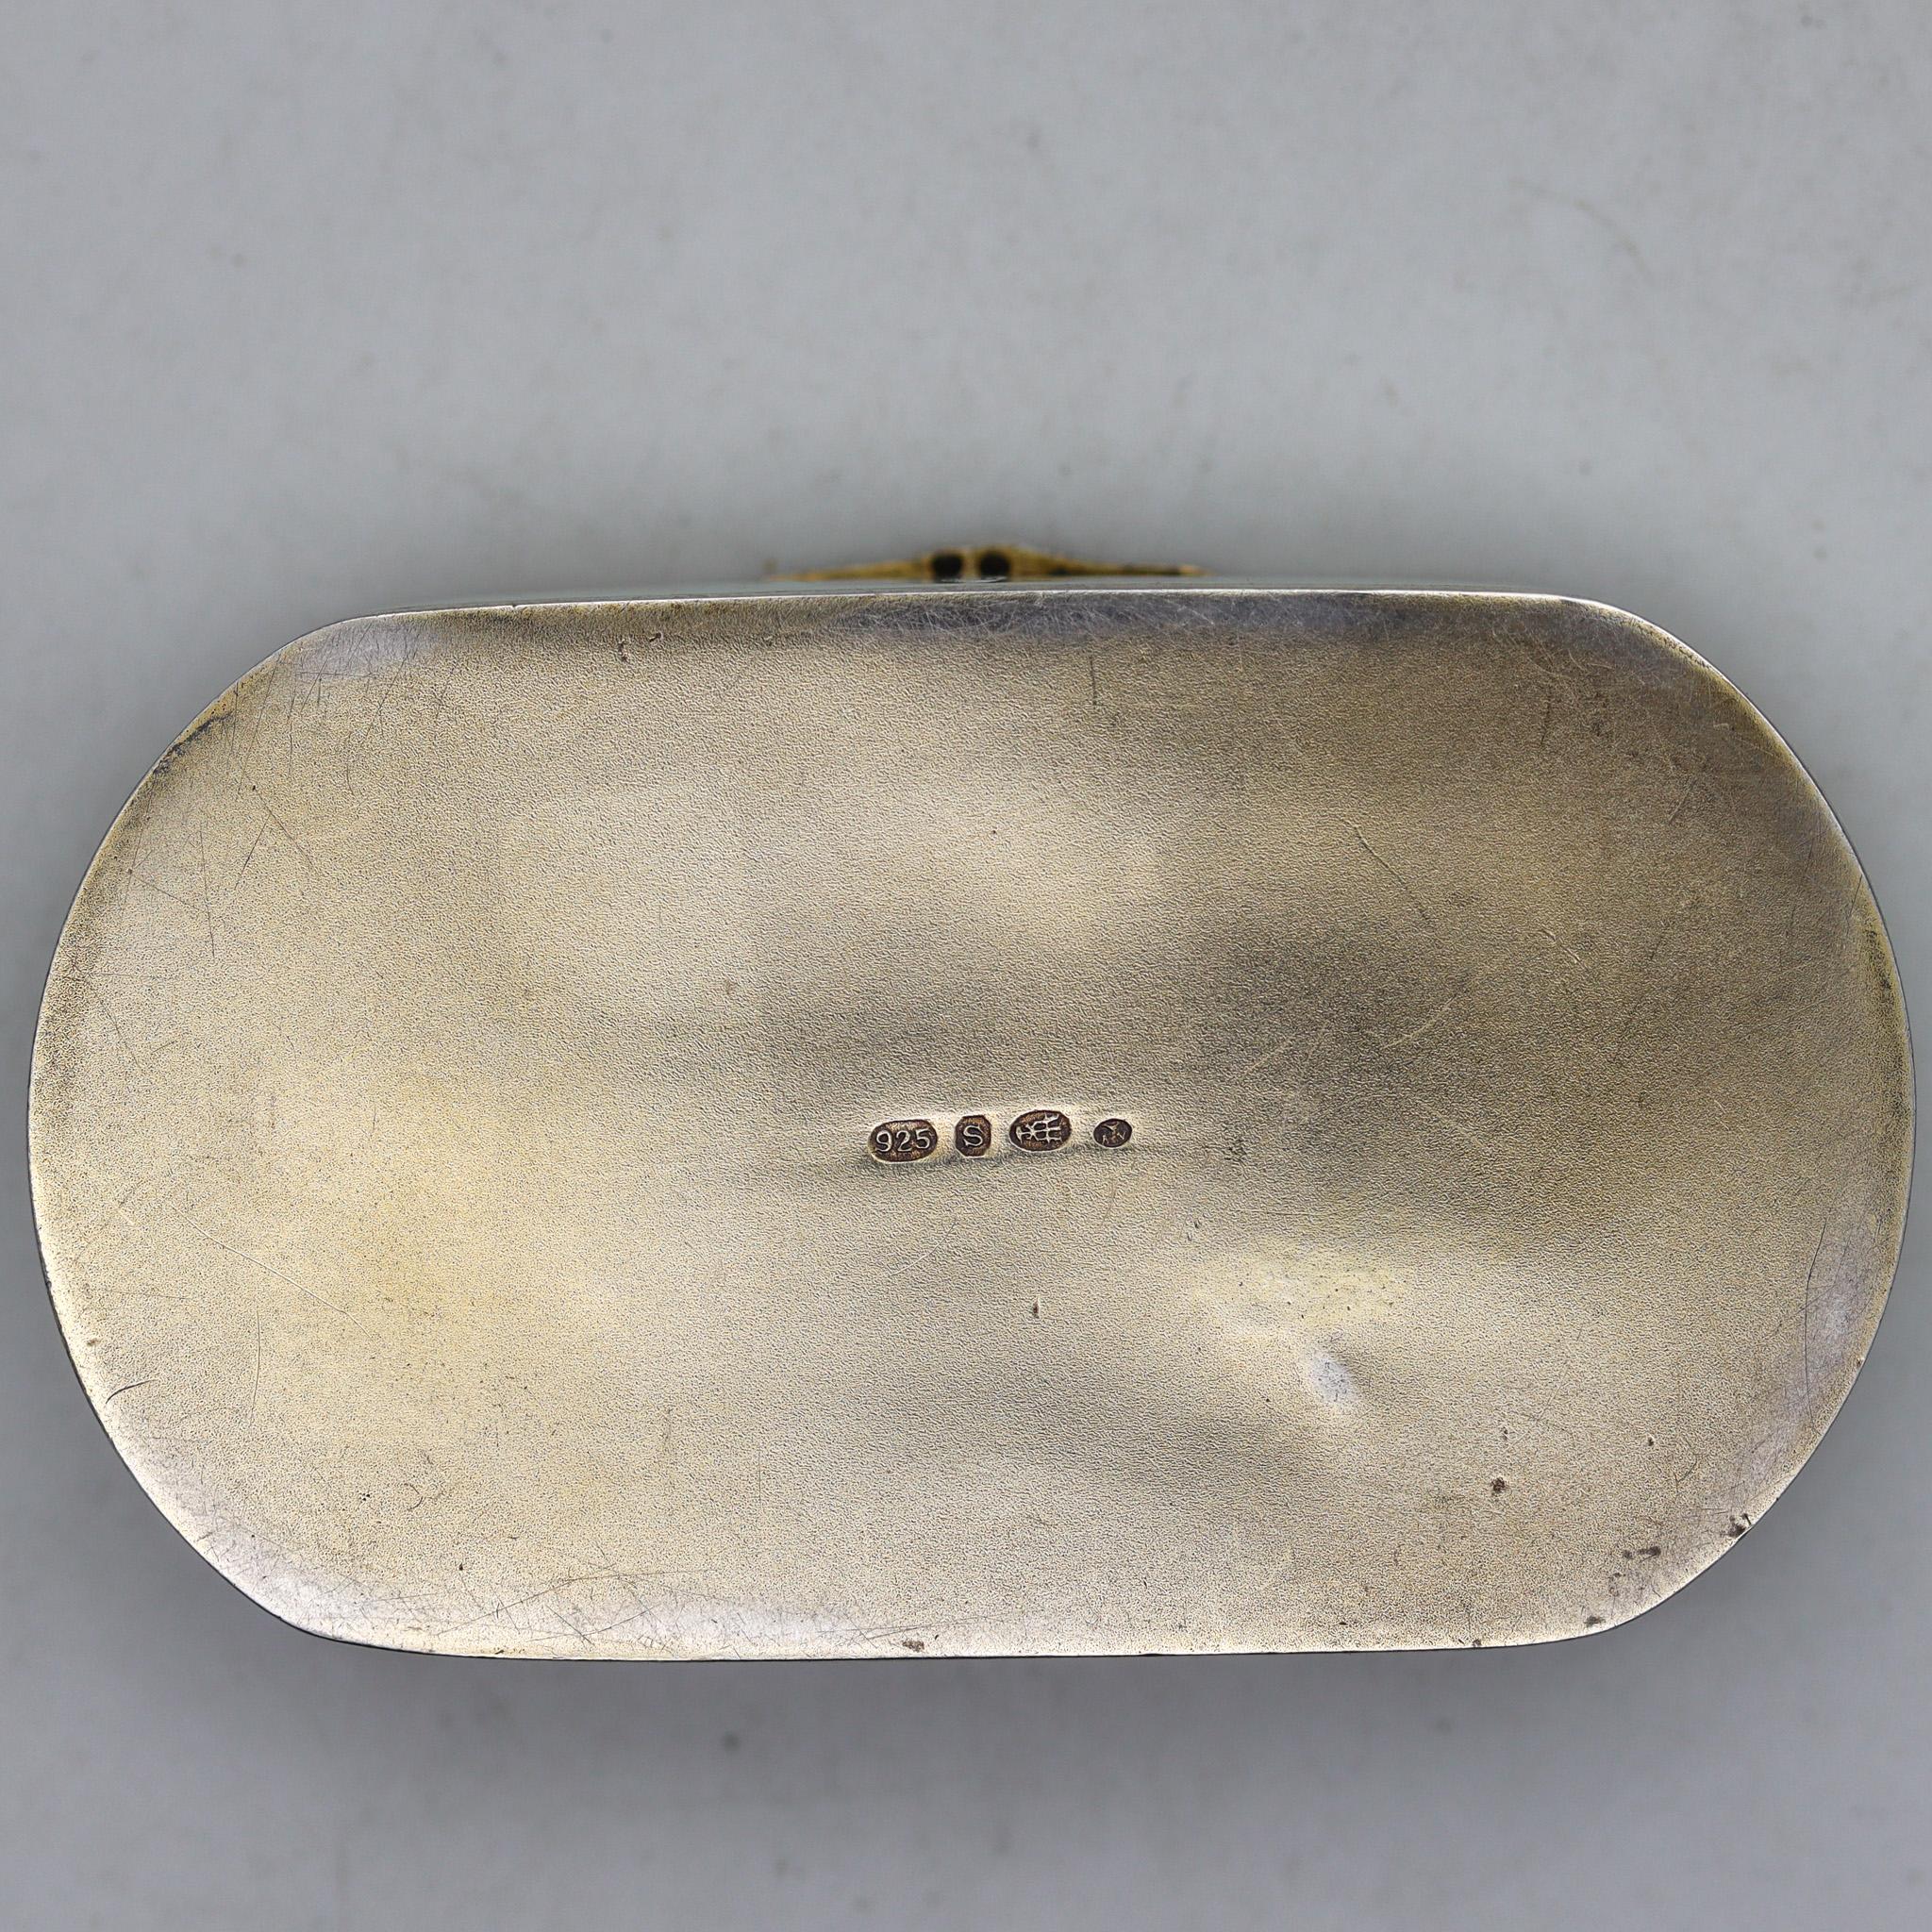 Eine guillochierte, emaillierte Pillendose, entworfen von David Andersen.

Äußerst seltene Emaille-Pillendose aus dem frühen 20. Jahrhundert, hergestellt in Norwegen während der späten Edwardianischen Periode und des Jugendstils in der Werkstatt von